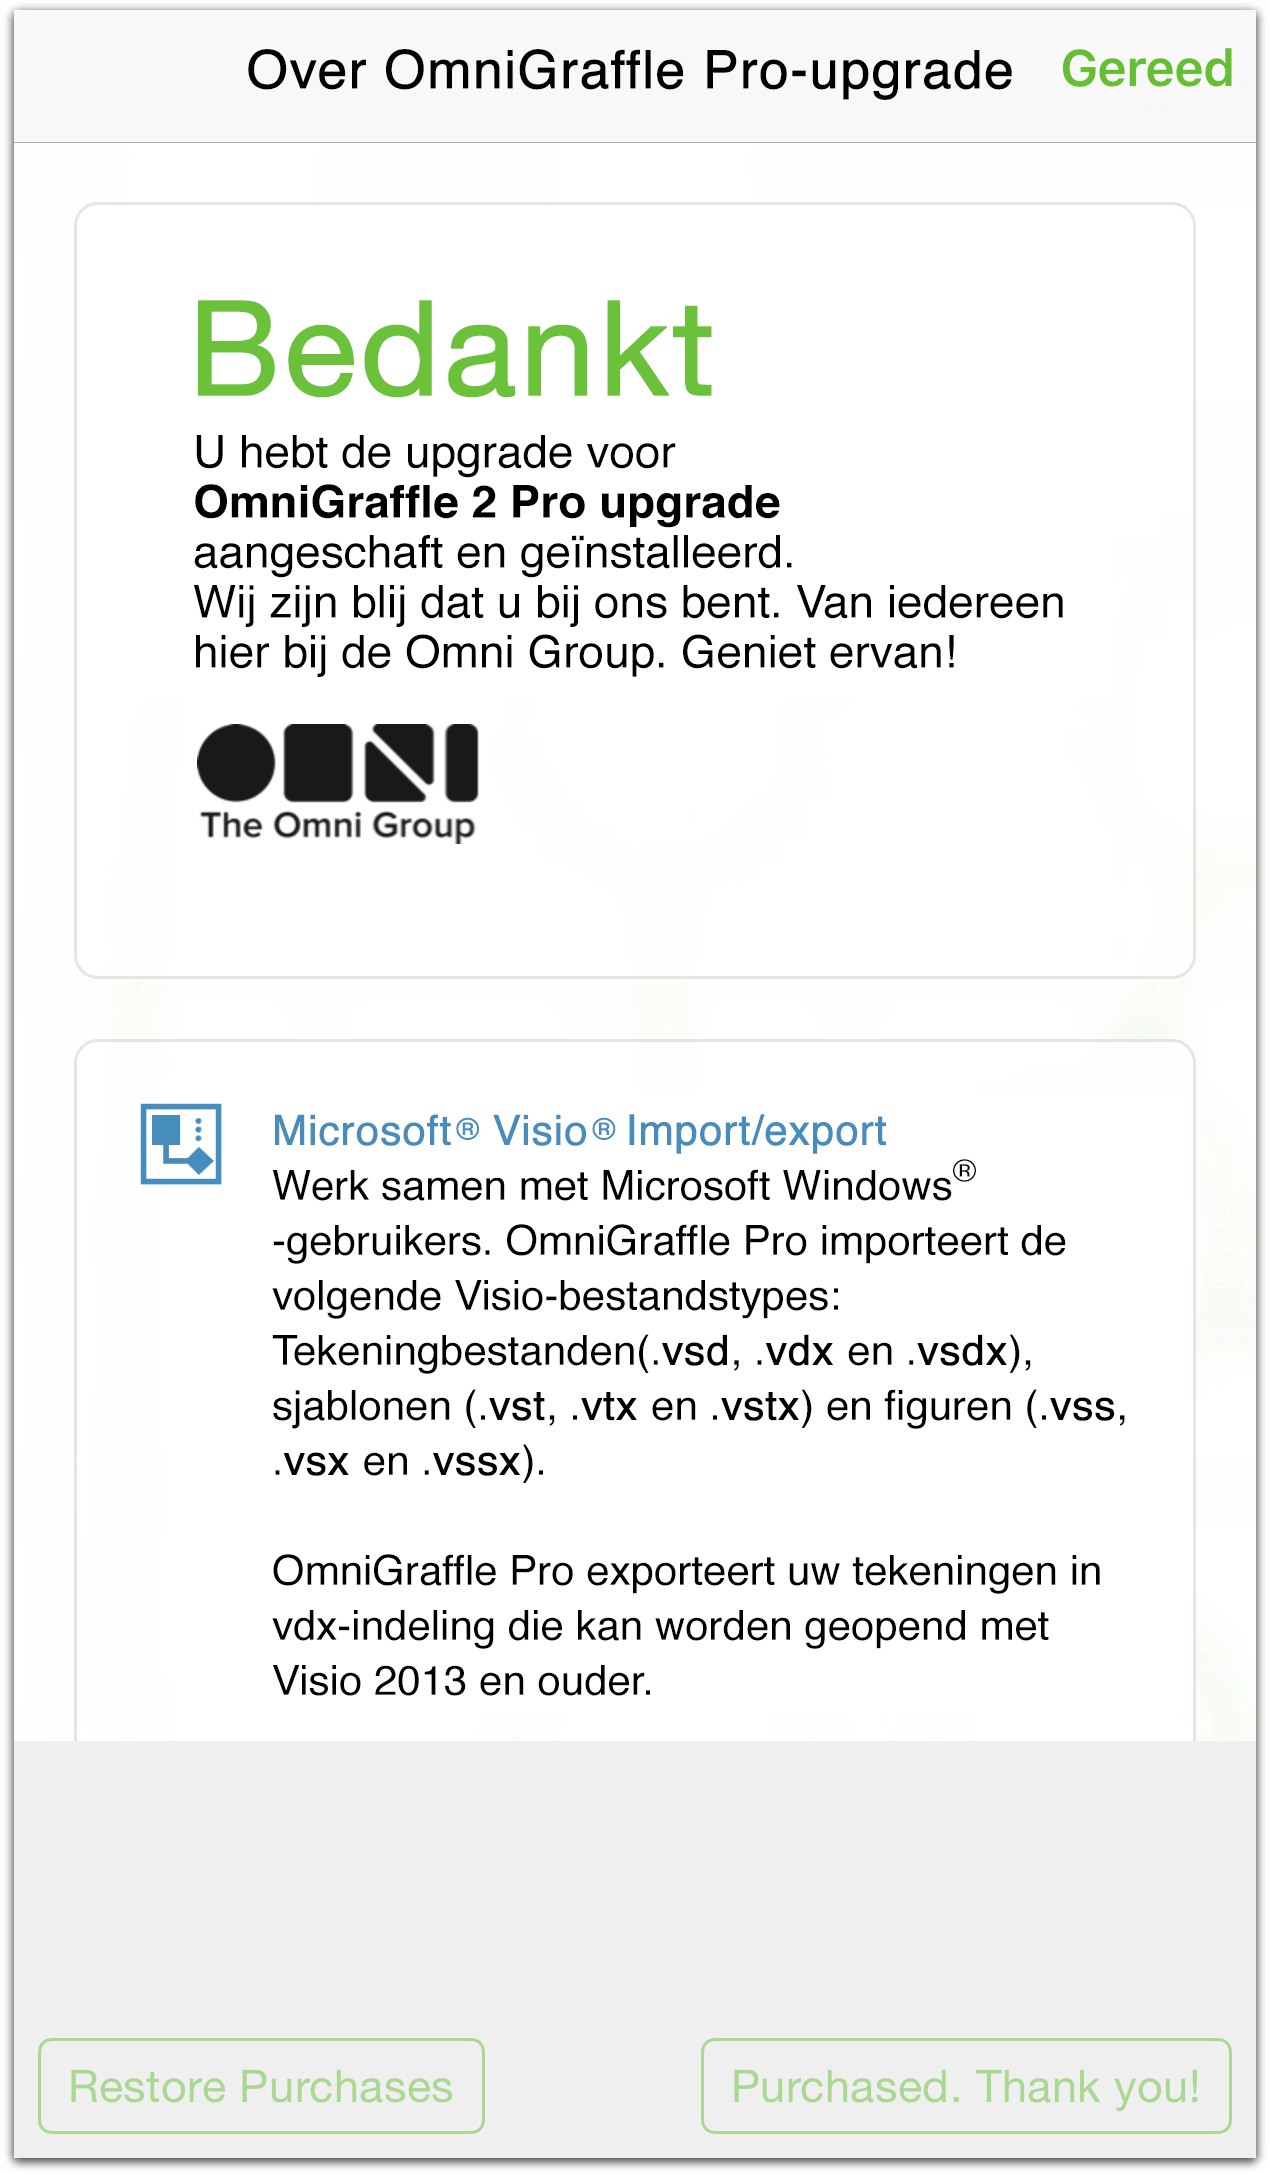 Bedankt voor het upgraden naar OmniGraffle 2 Pro